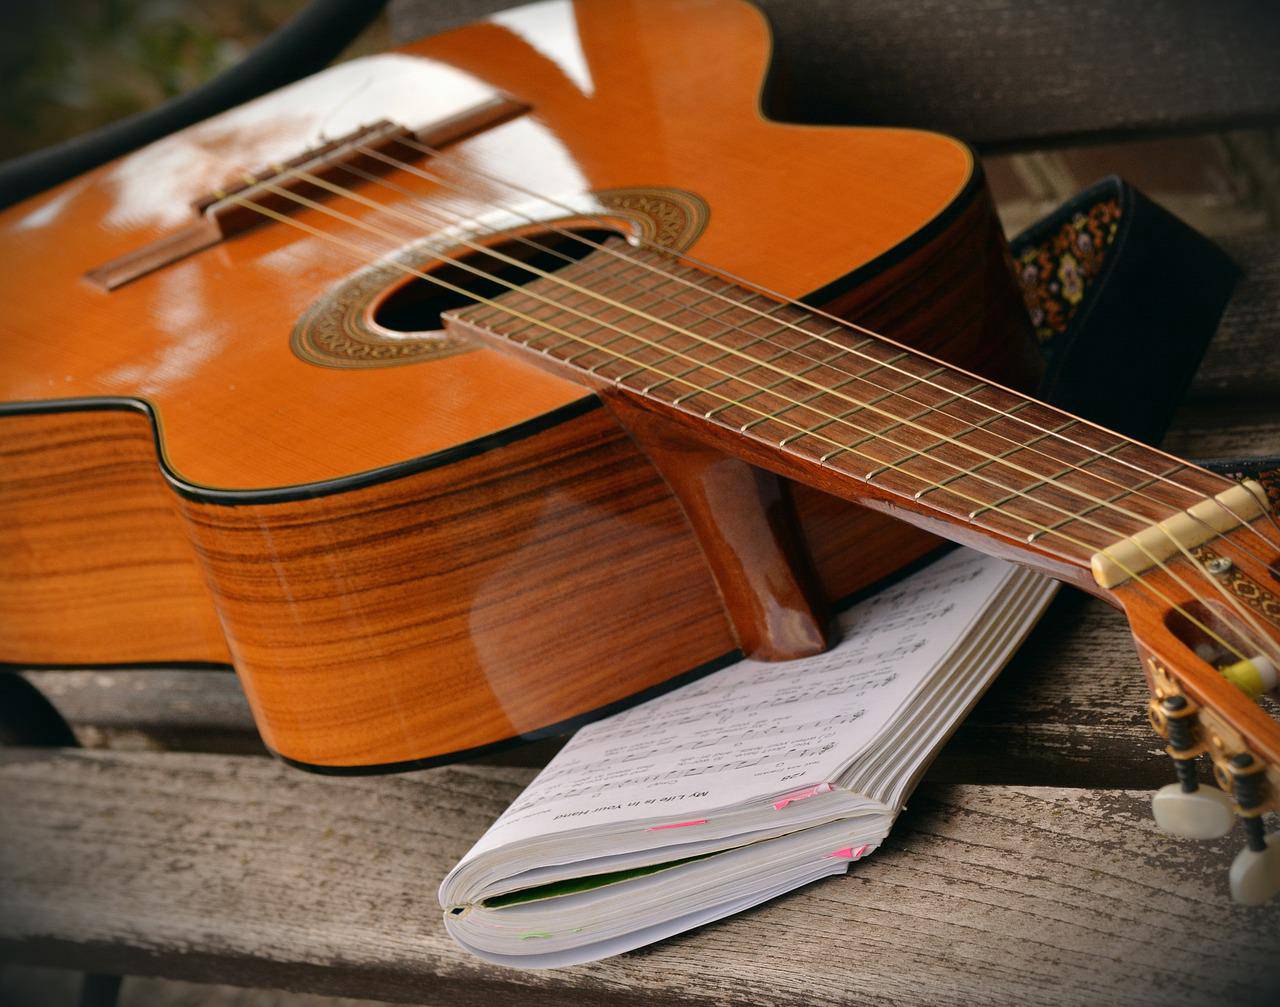 Песни под гитару: мастер-класс организуют в Доме культуры «Гайдаровец». Фото: pixabay.com